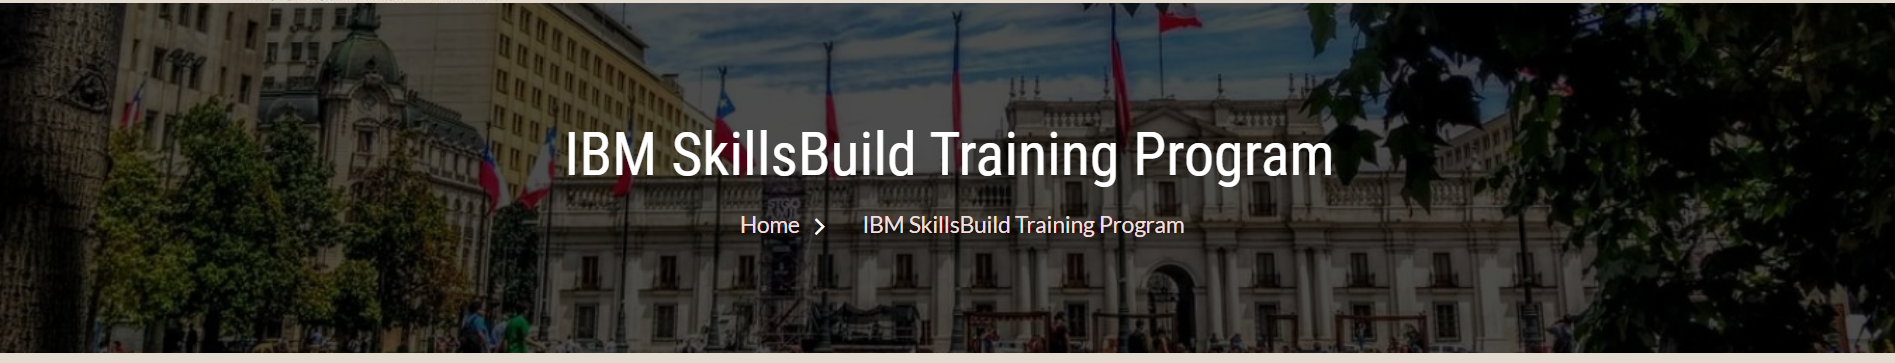 IBM SkillsBuild Training Program